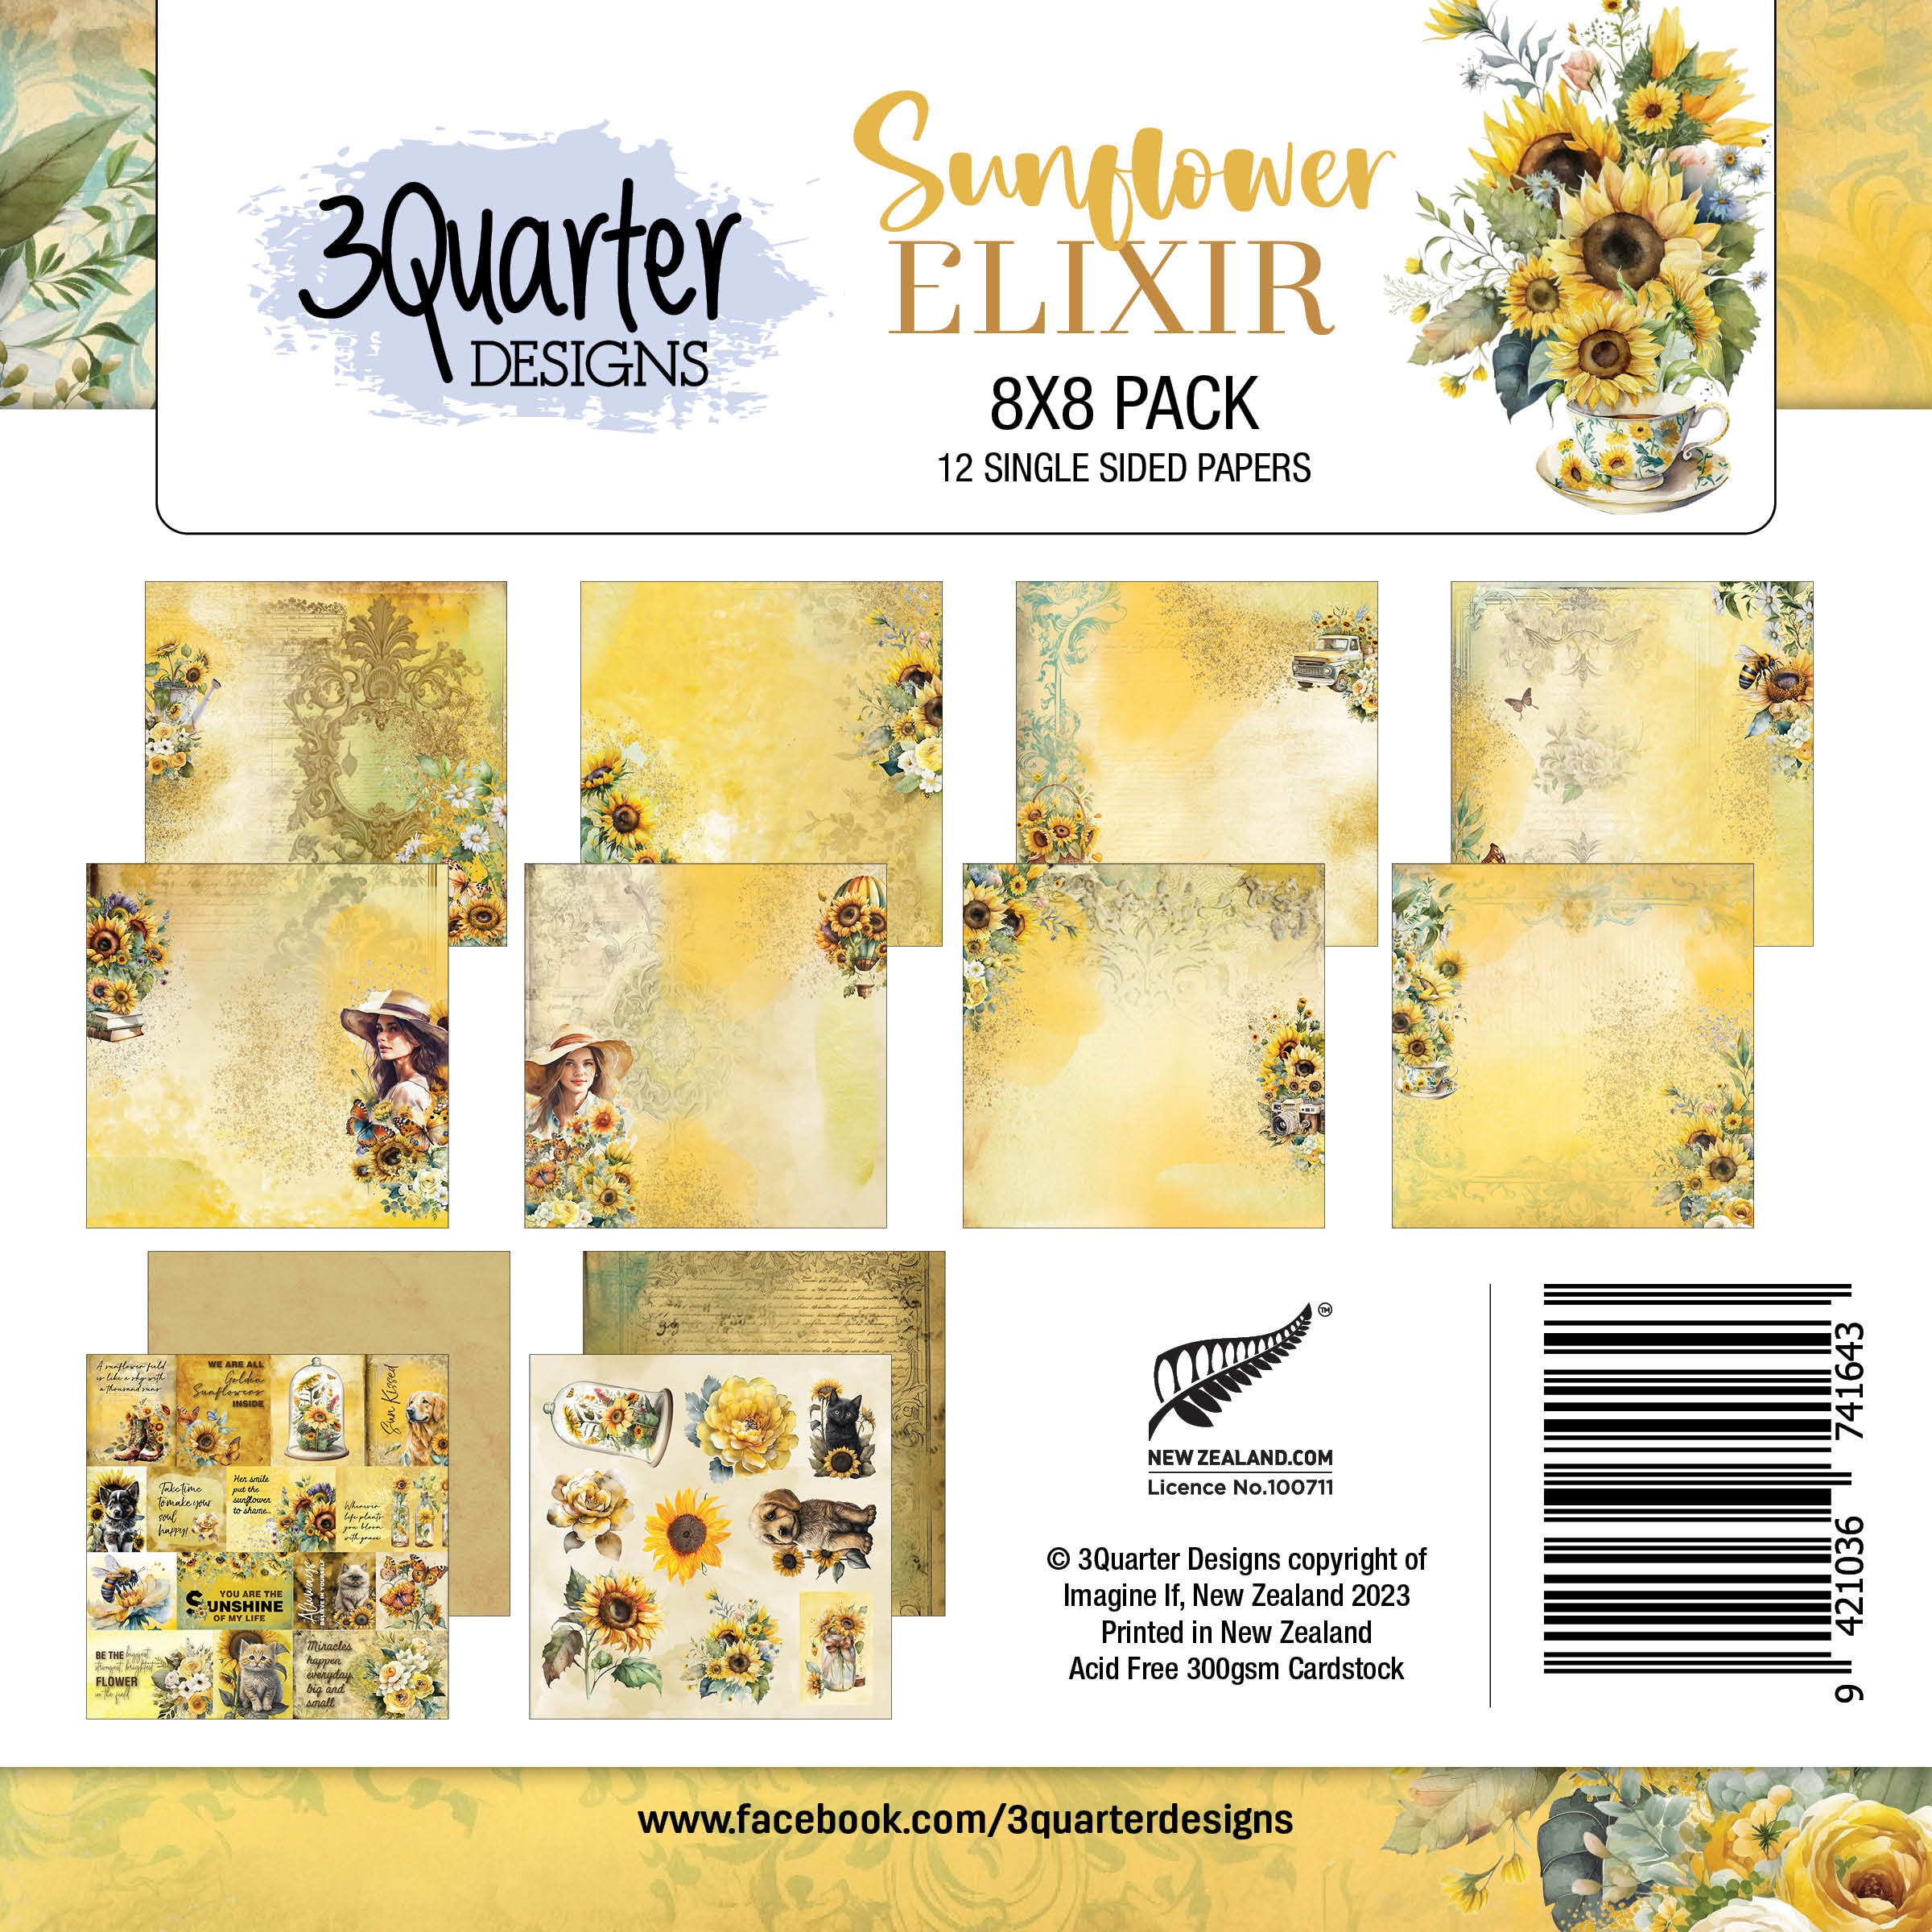 Sunflower Elixir 8x8 pack